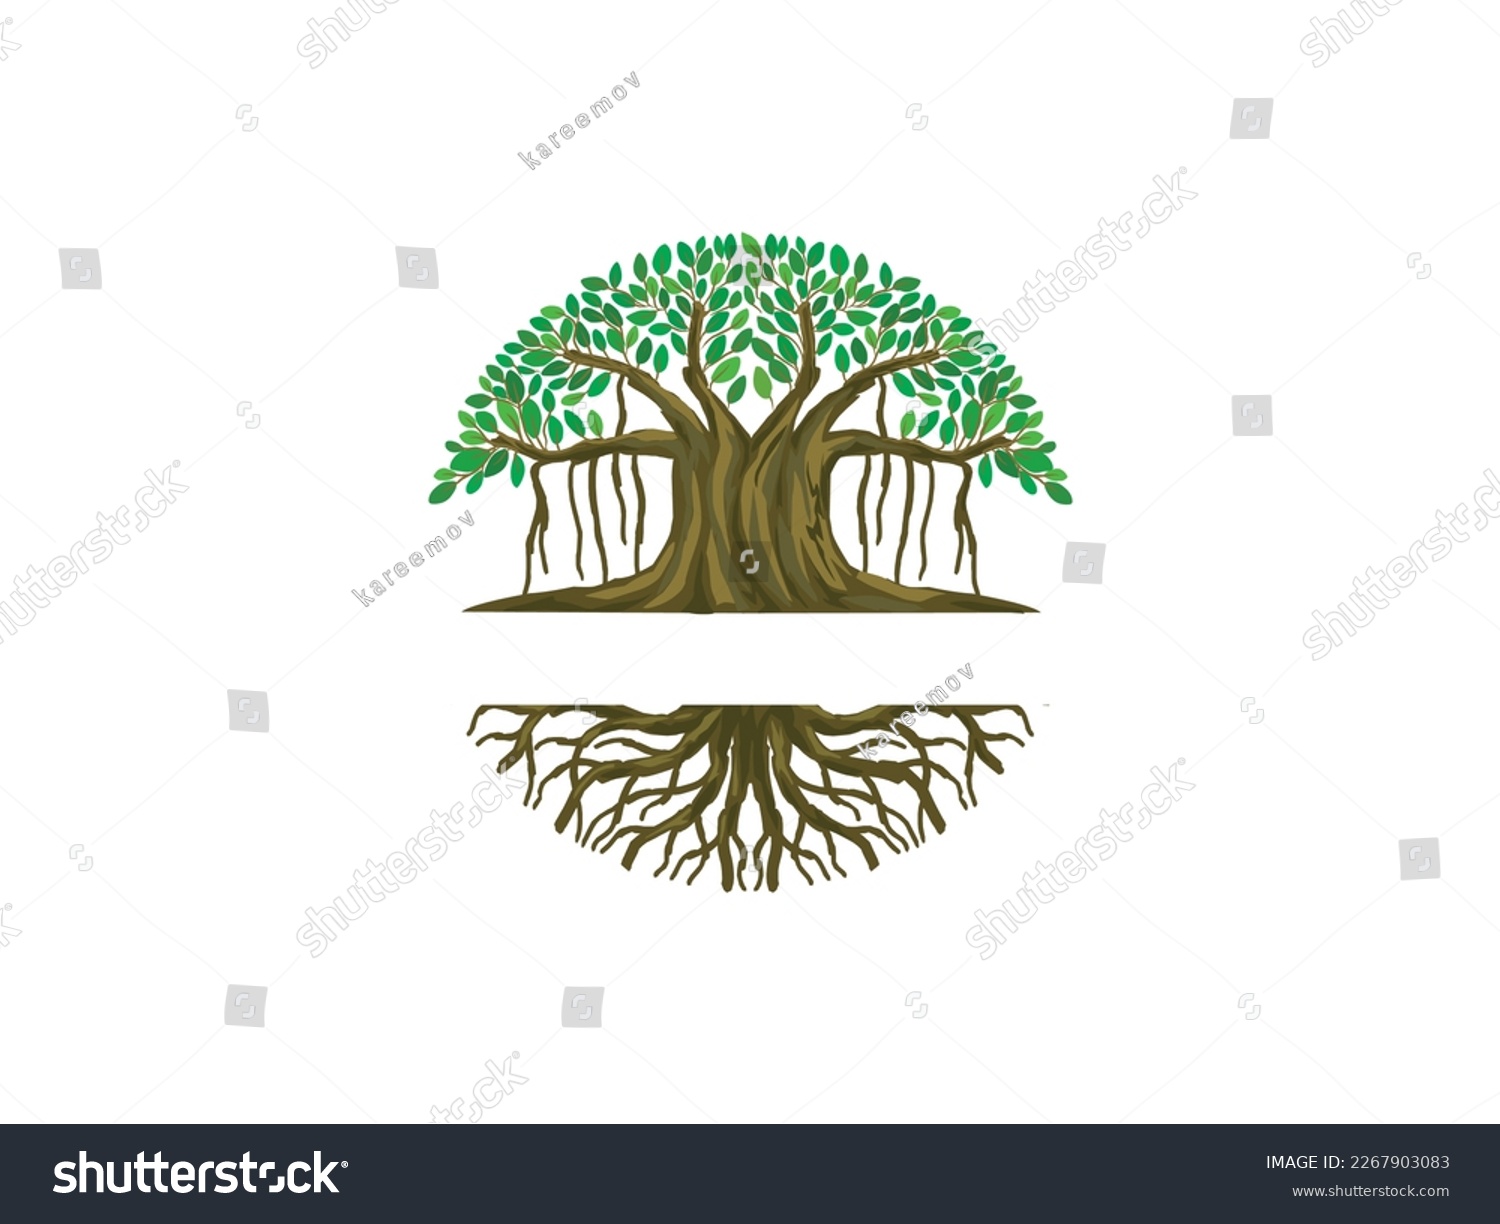 SVG of Banyan tree logo with circle shaped svg